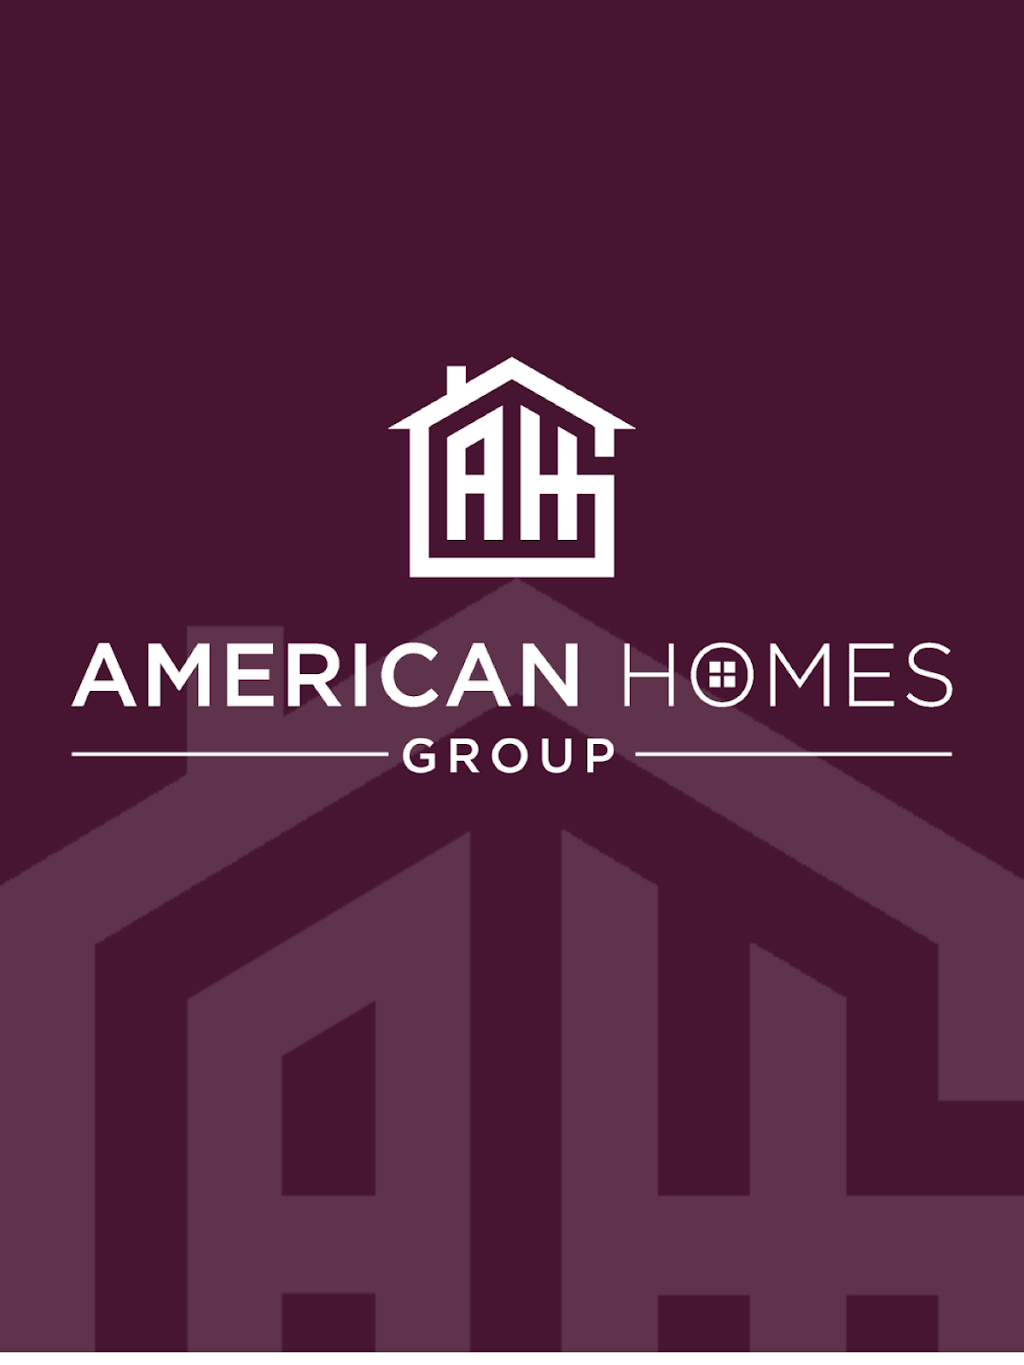 American Homes Group | 2005 Bellmore St, Oakhurst, NJ 07755 | Phone: (732) 289-3900